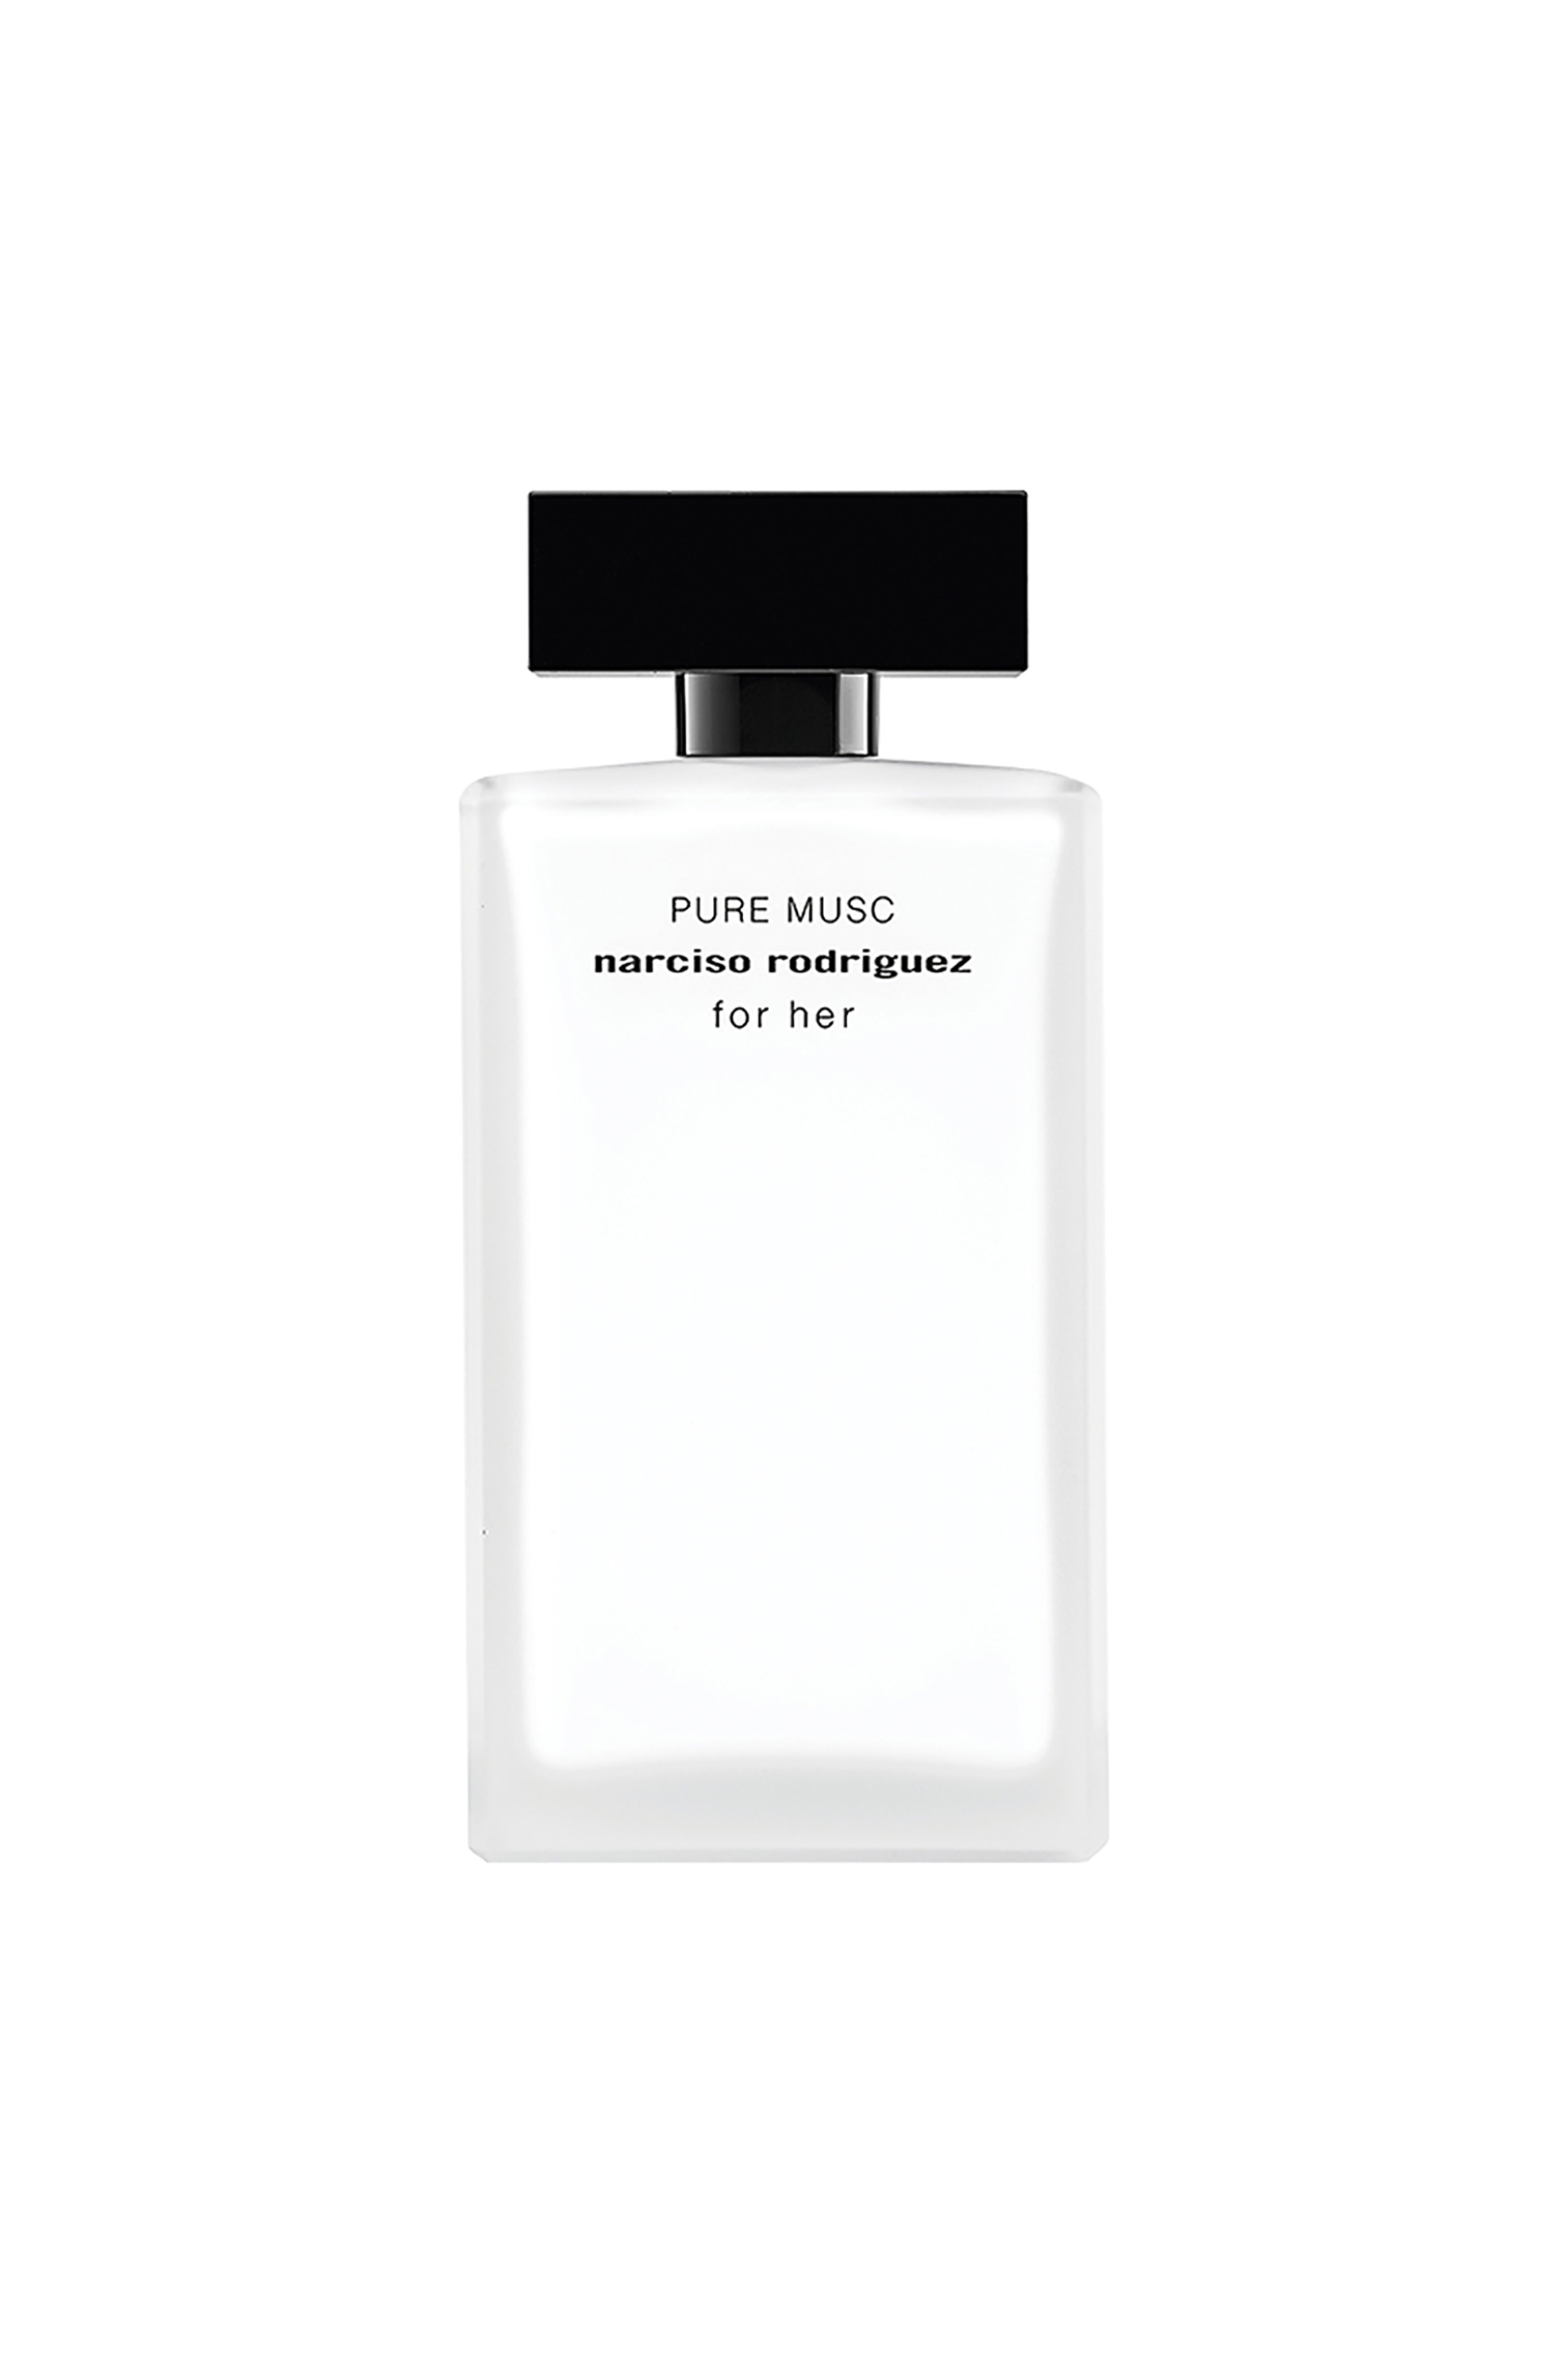 Narciso Rodriguez For Her Pure Musc Eau de Parfum - 85159500000 1052194